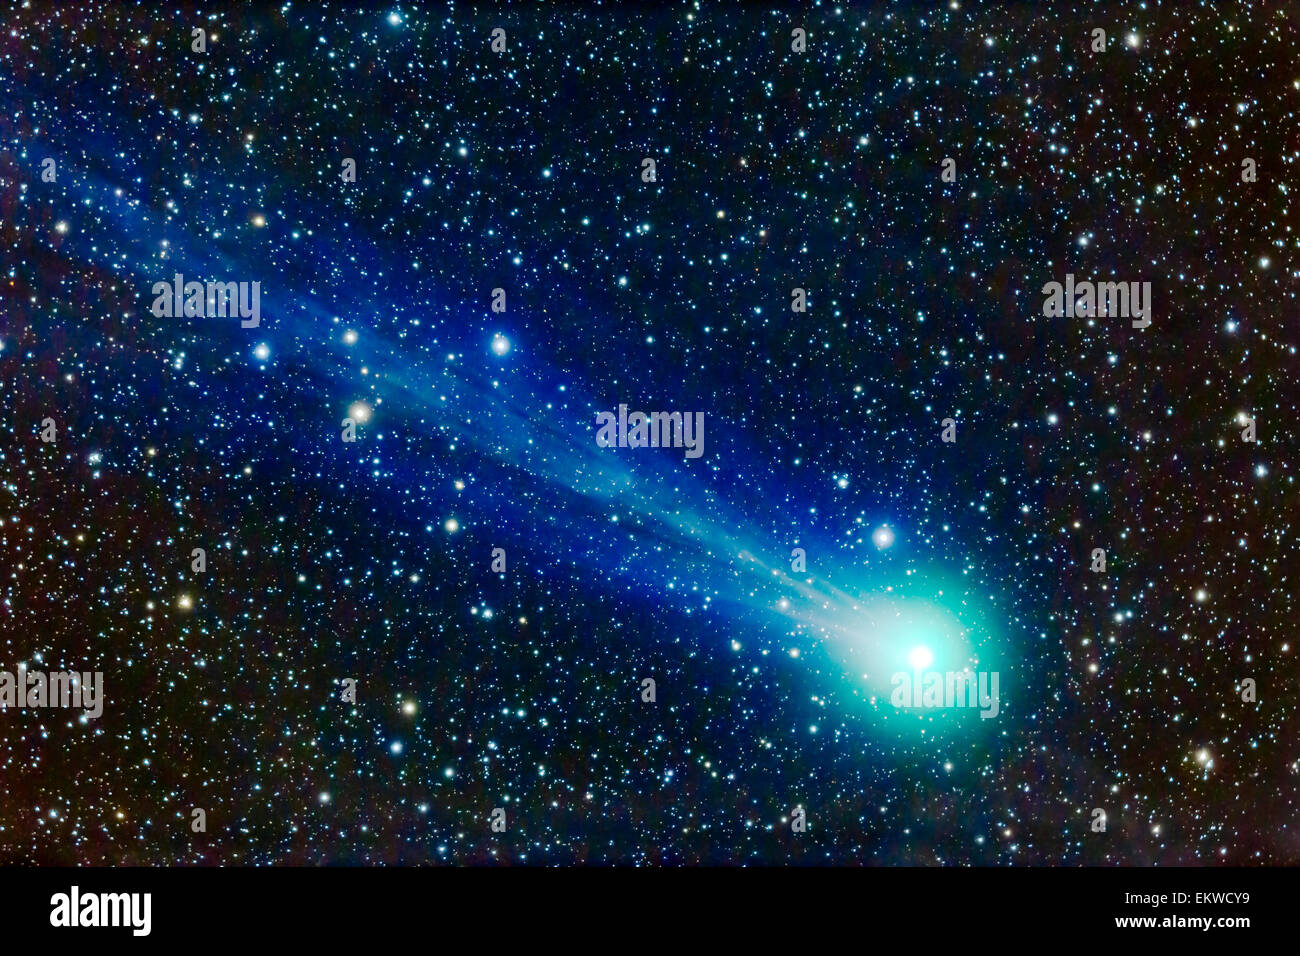 17 janvier 2015 - un bras télescopique close-up de la comète Lovejoy (C/2014 Q2) montrant structure dans la queue de gaz d'ions, sous la forme d'stre Banque D'Images